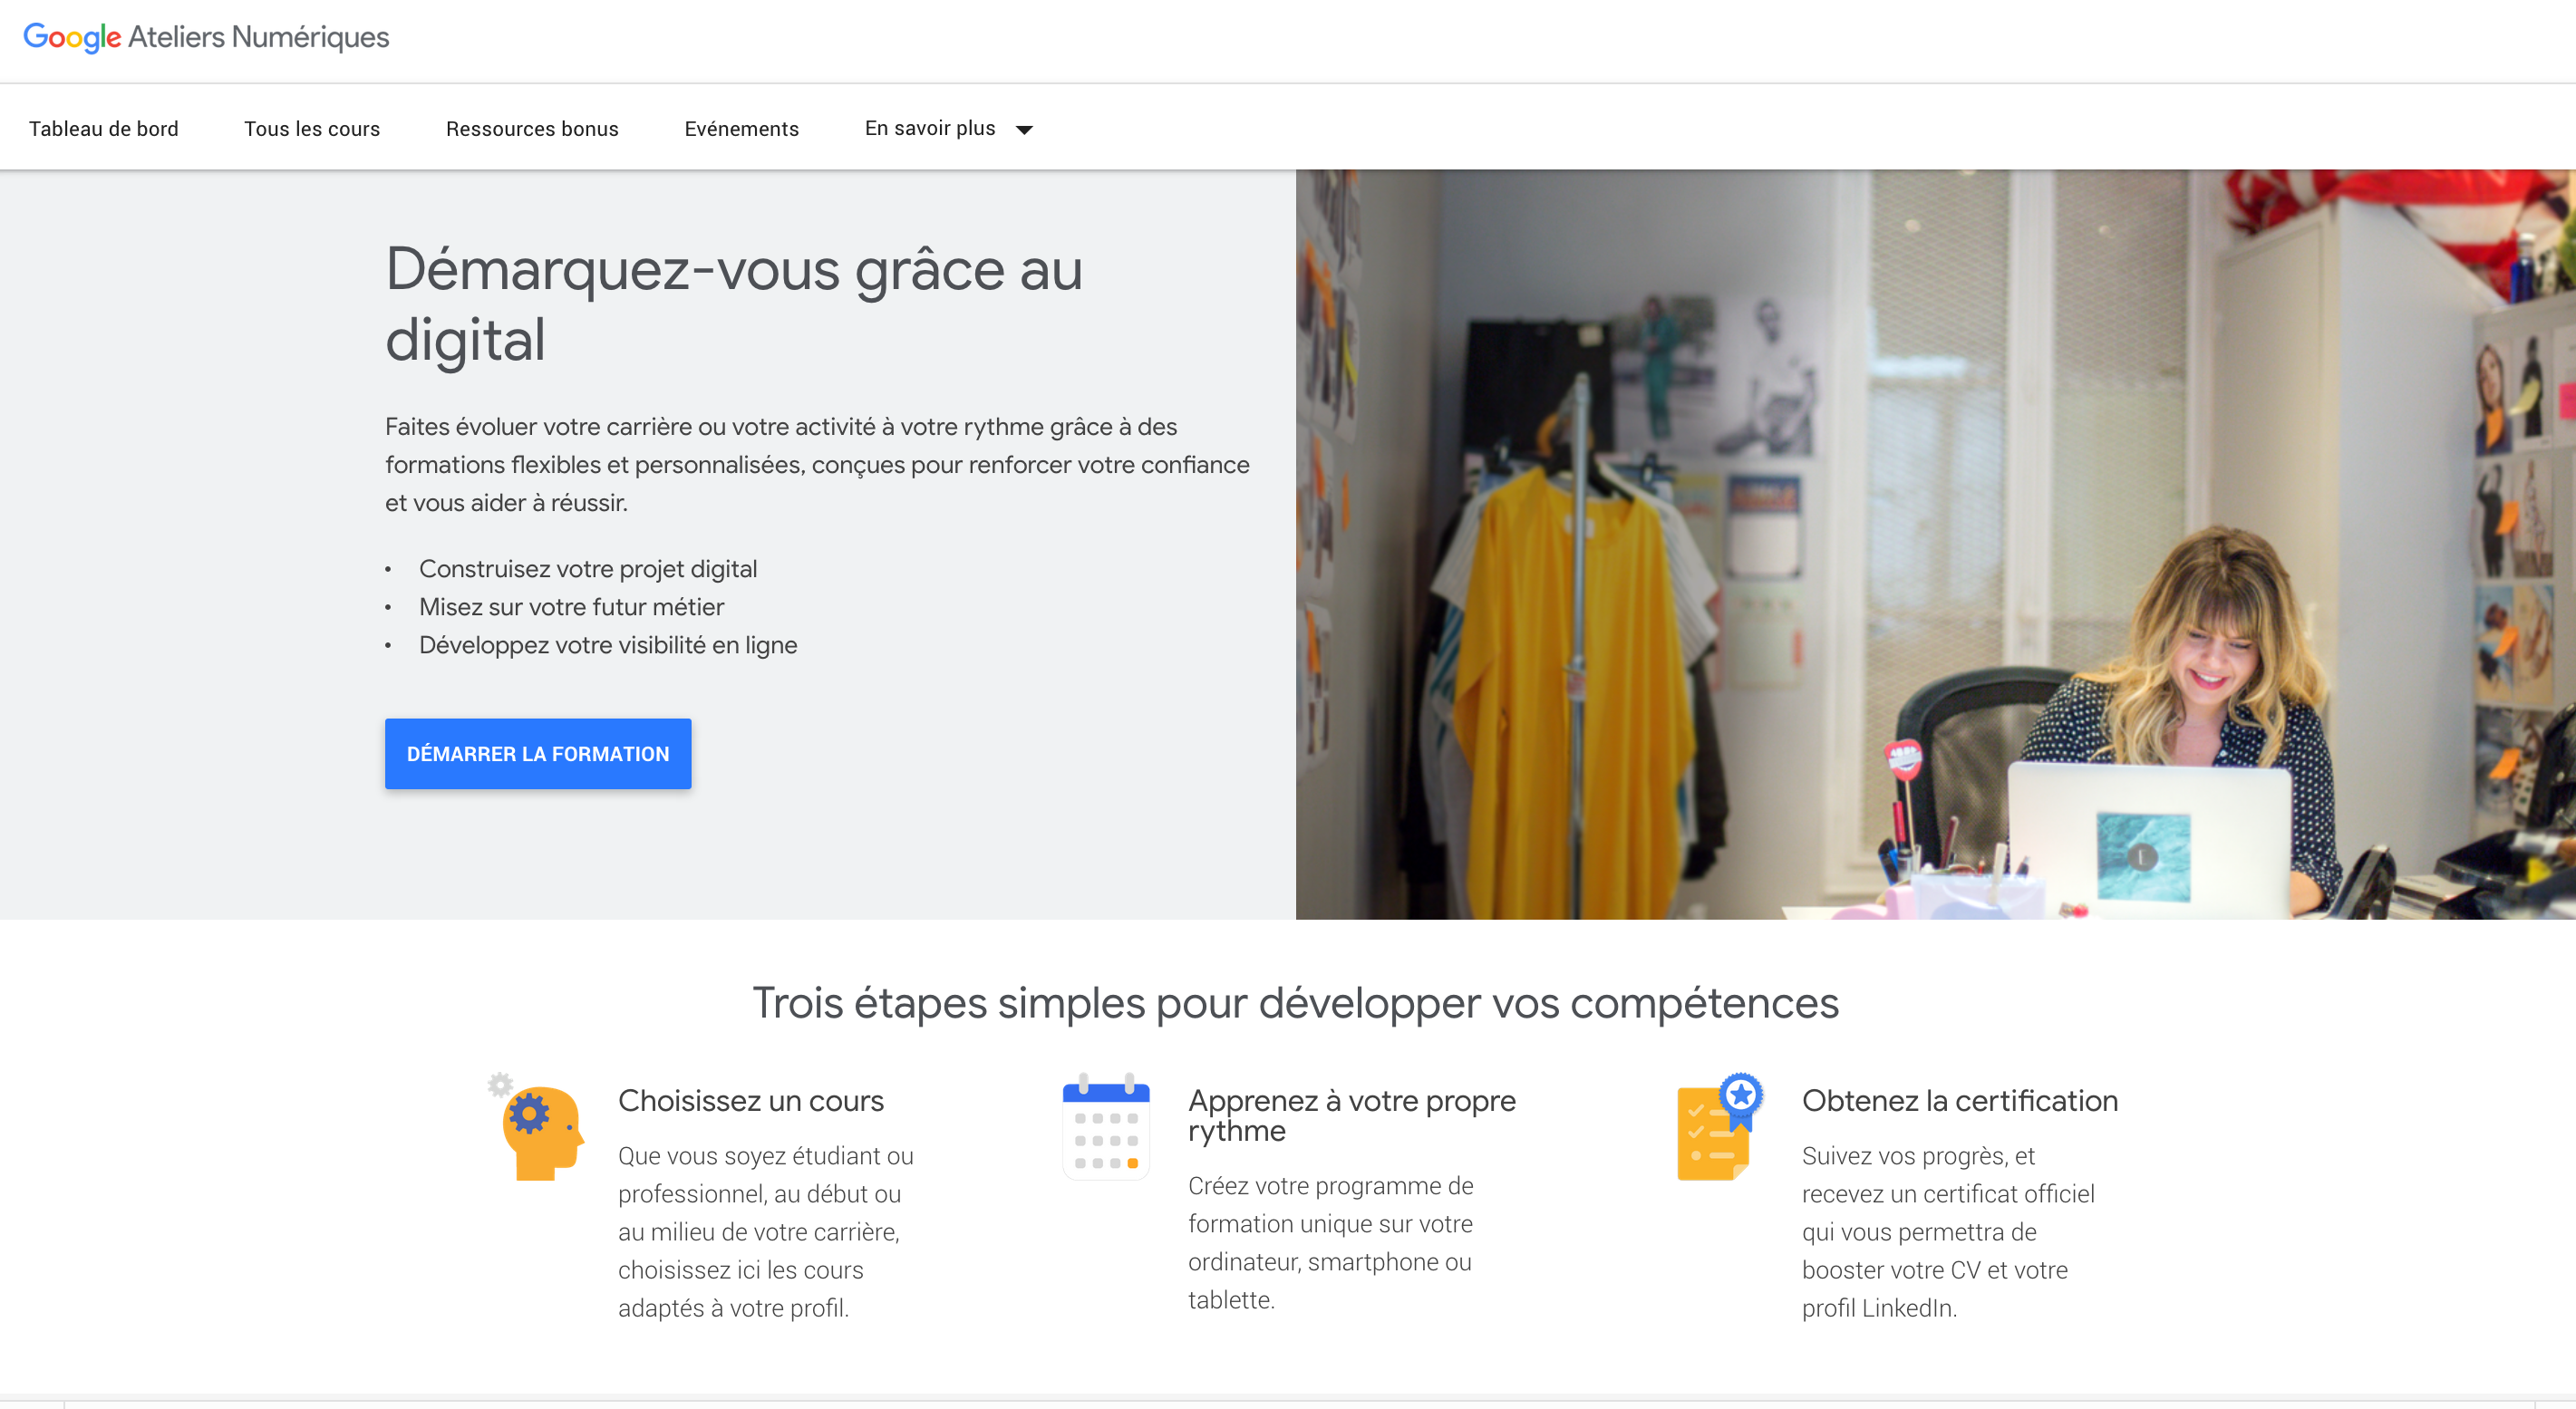 Ateliers Numeriques Google : la formation gratuite pour le marketing digital